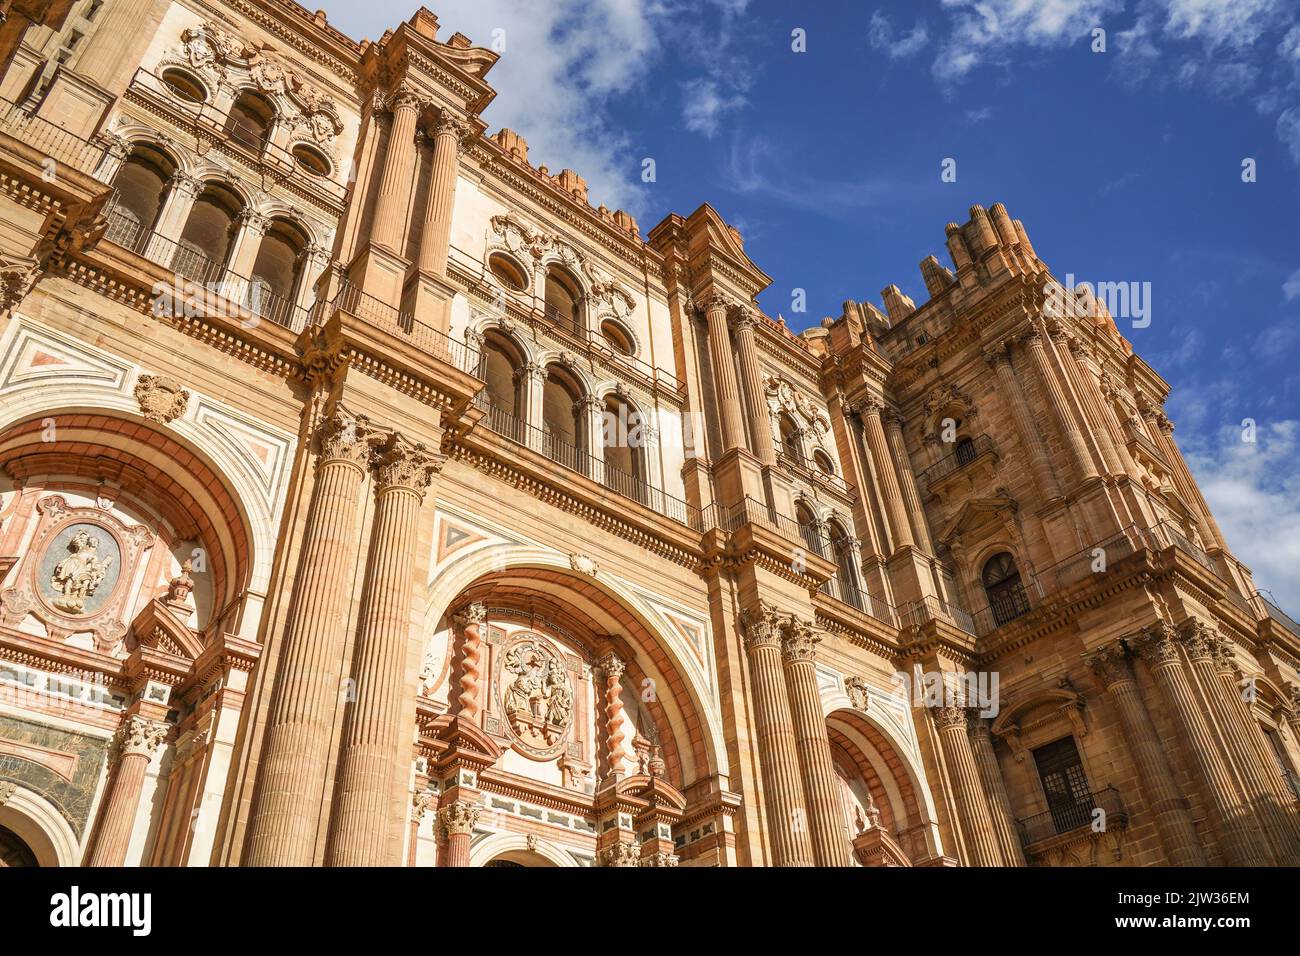 La Cathédrale de l'Incarnation (Catedral de la Encarnation), Malaga, Andalousie, espagne. Banque D'Images